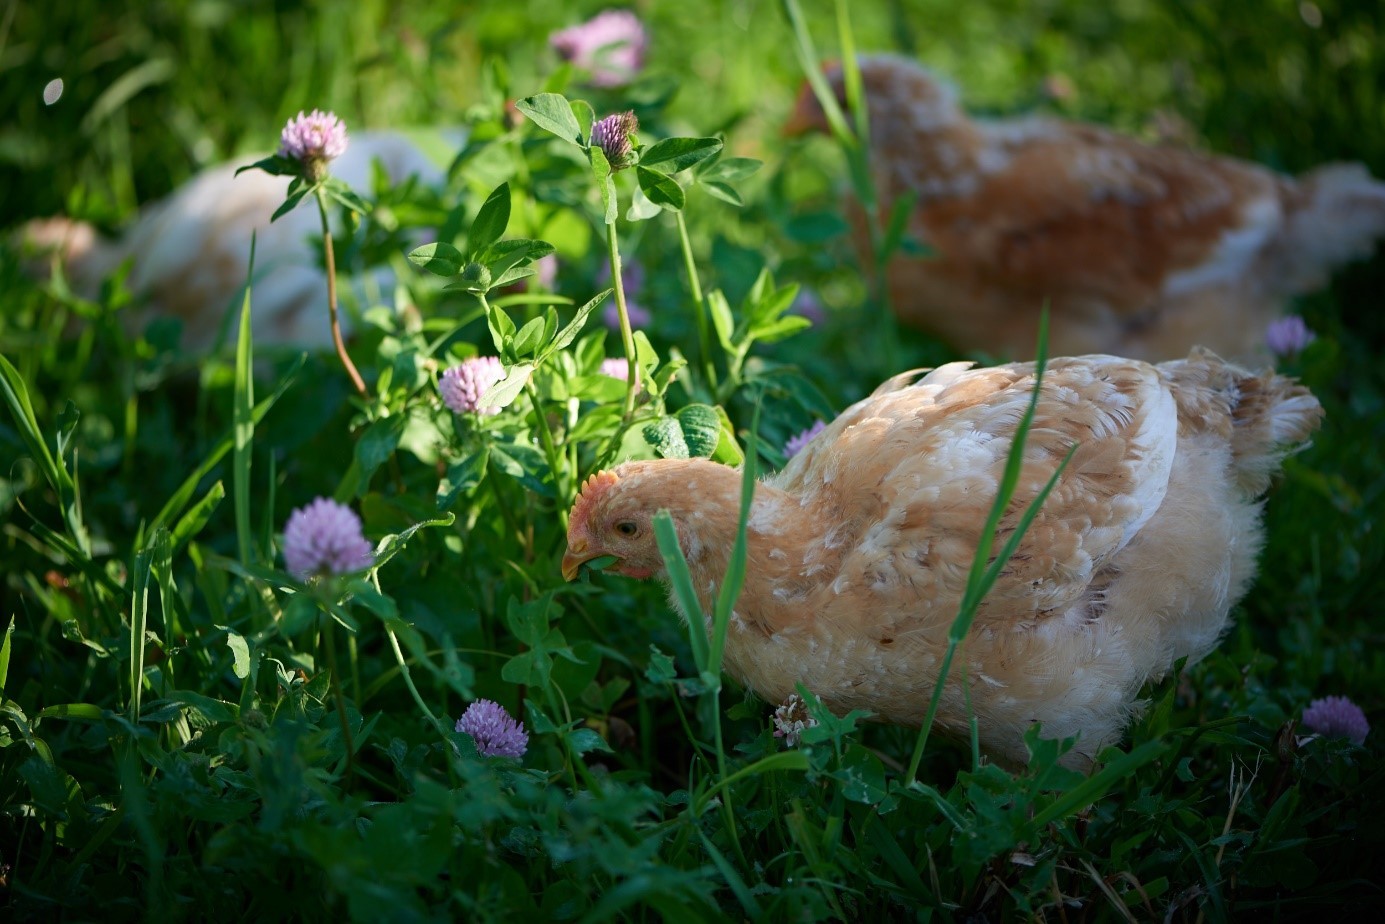 Chickens eating clover outside. (Photo: Steffen Adler)